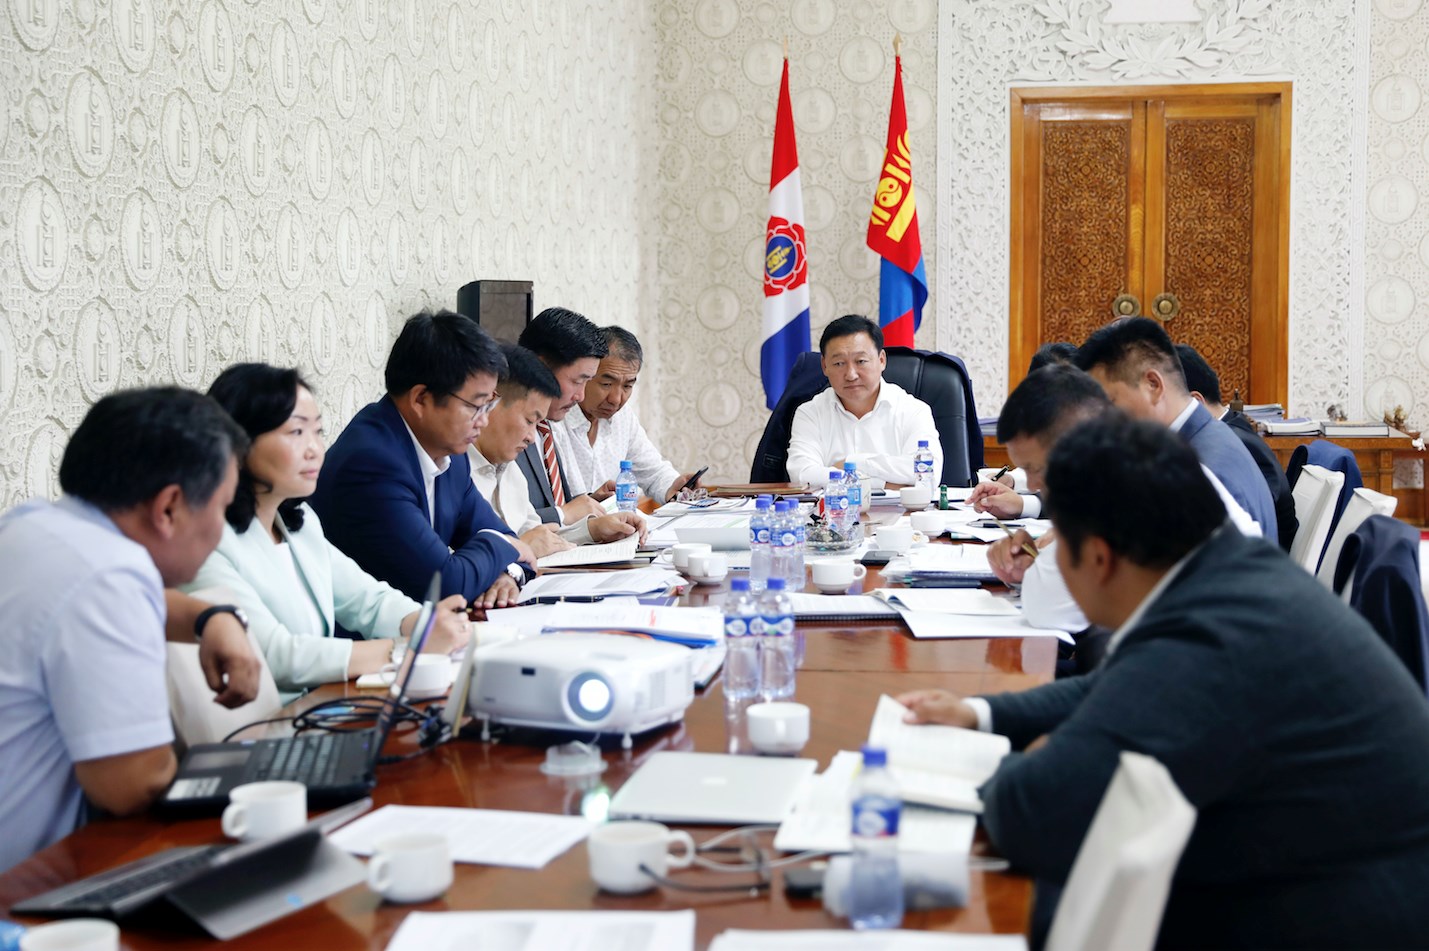 Монгол Улсын Засаг захиргаа, нутаг дэвсгэрийн нэгж, түүний удирдлагын тухай хуулийн шинэчилсэн найруулгын төслийн ажлын хэсэг хуралдлаа